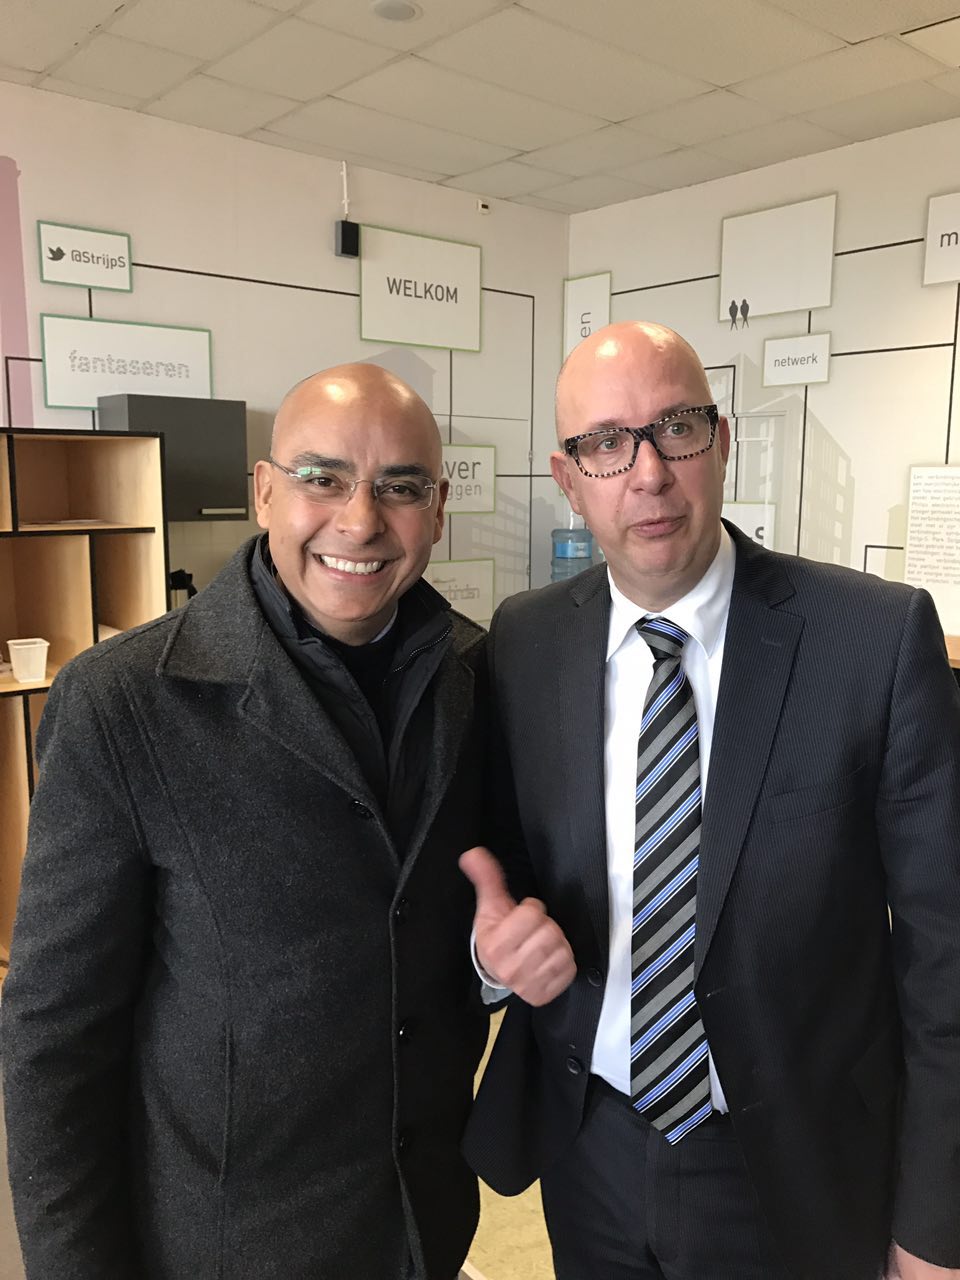  Marcos Aguilar se reúne con alcalde de Eindhoven, la comunidad más inteligente